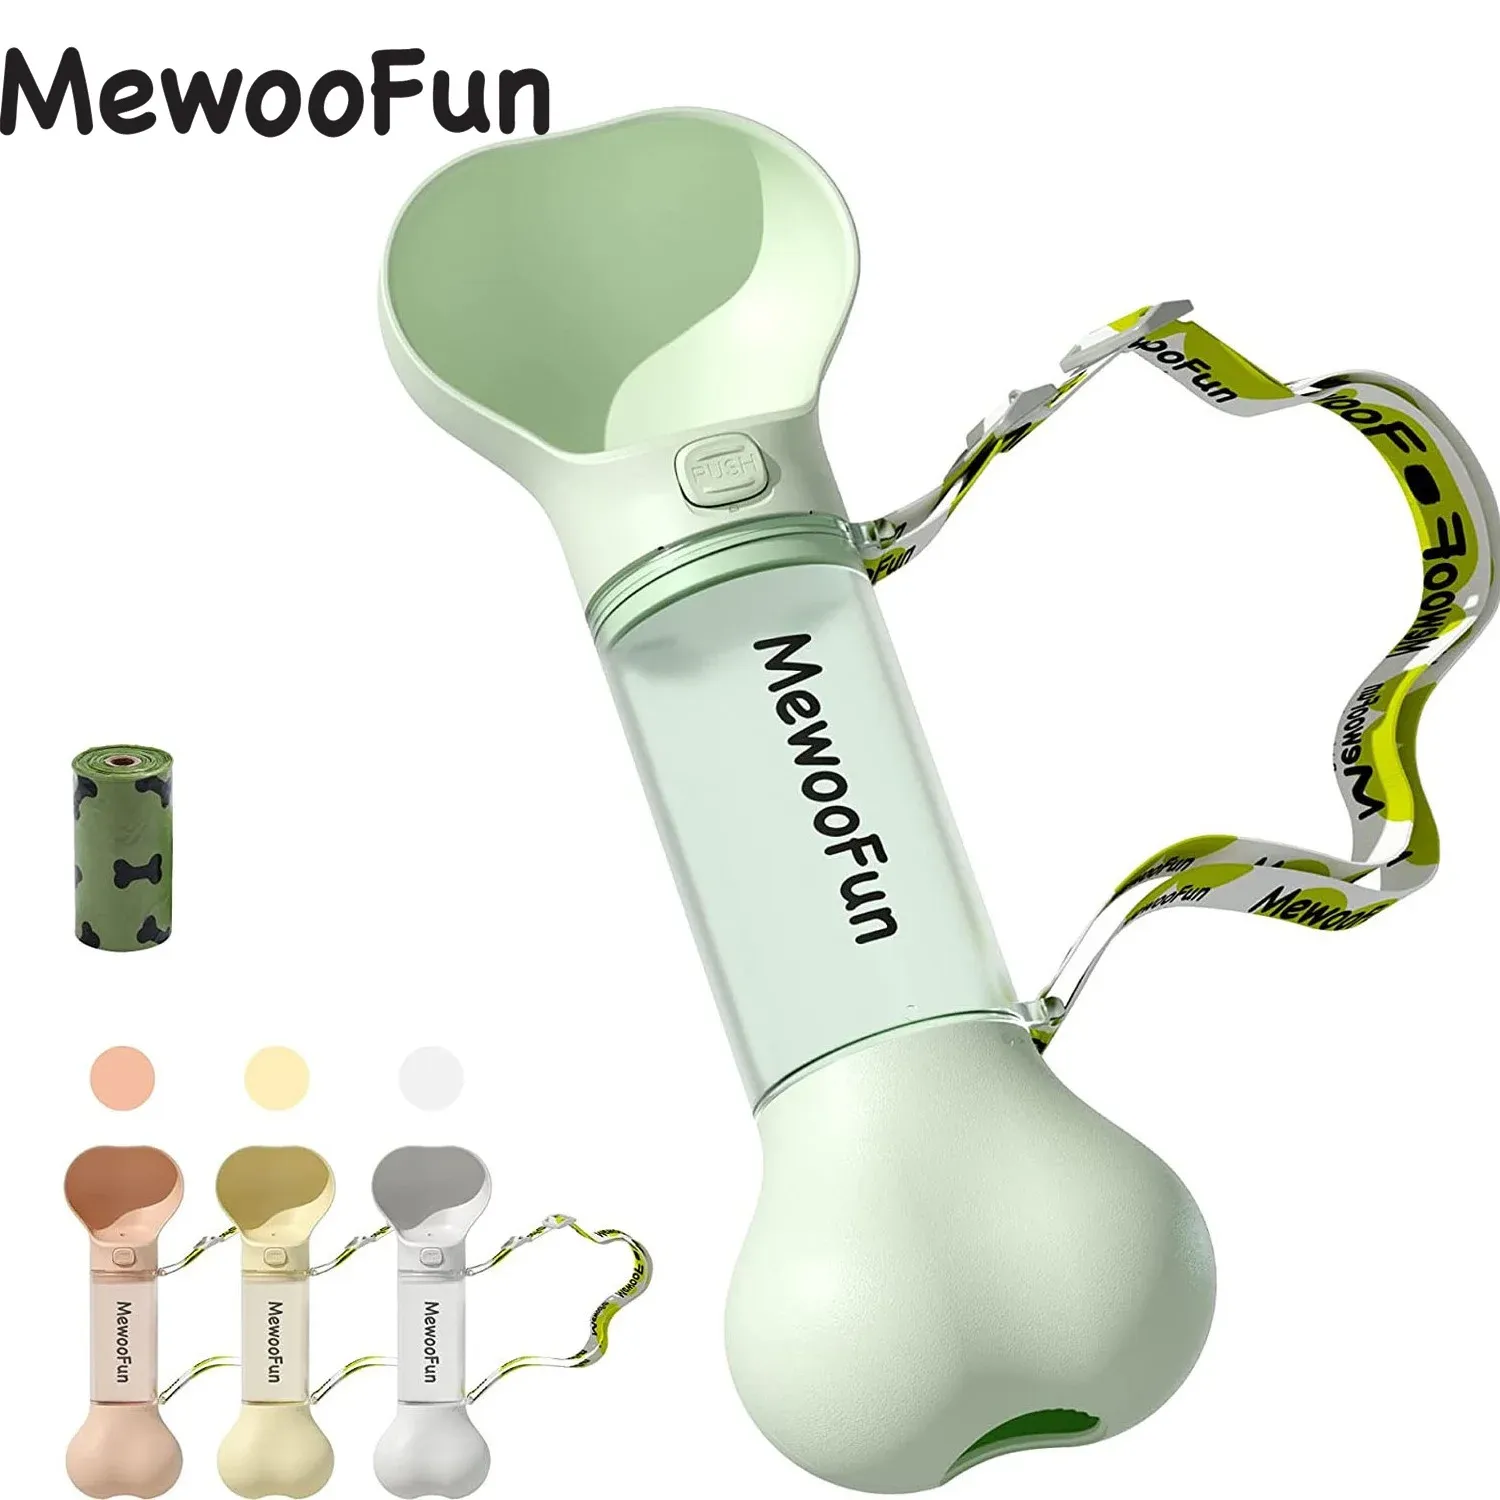 Alimentatori Mewoofun Cat Dog Water Bottle Feeder Bowl 2 in 1 A prova di perdite Portatile Moda Pet Potabile Strumento da viaggio all'aperto con sacchetto per la cacca